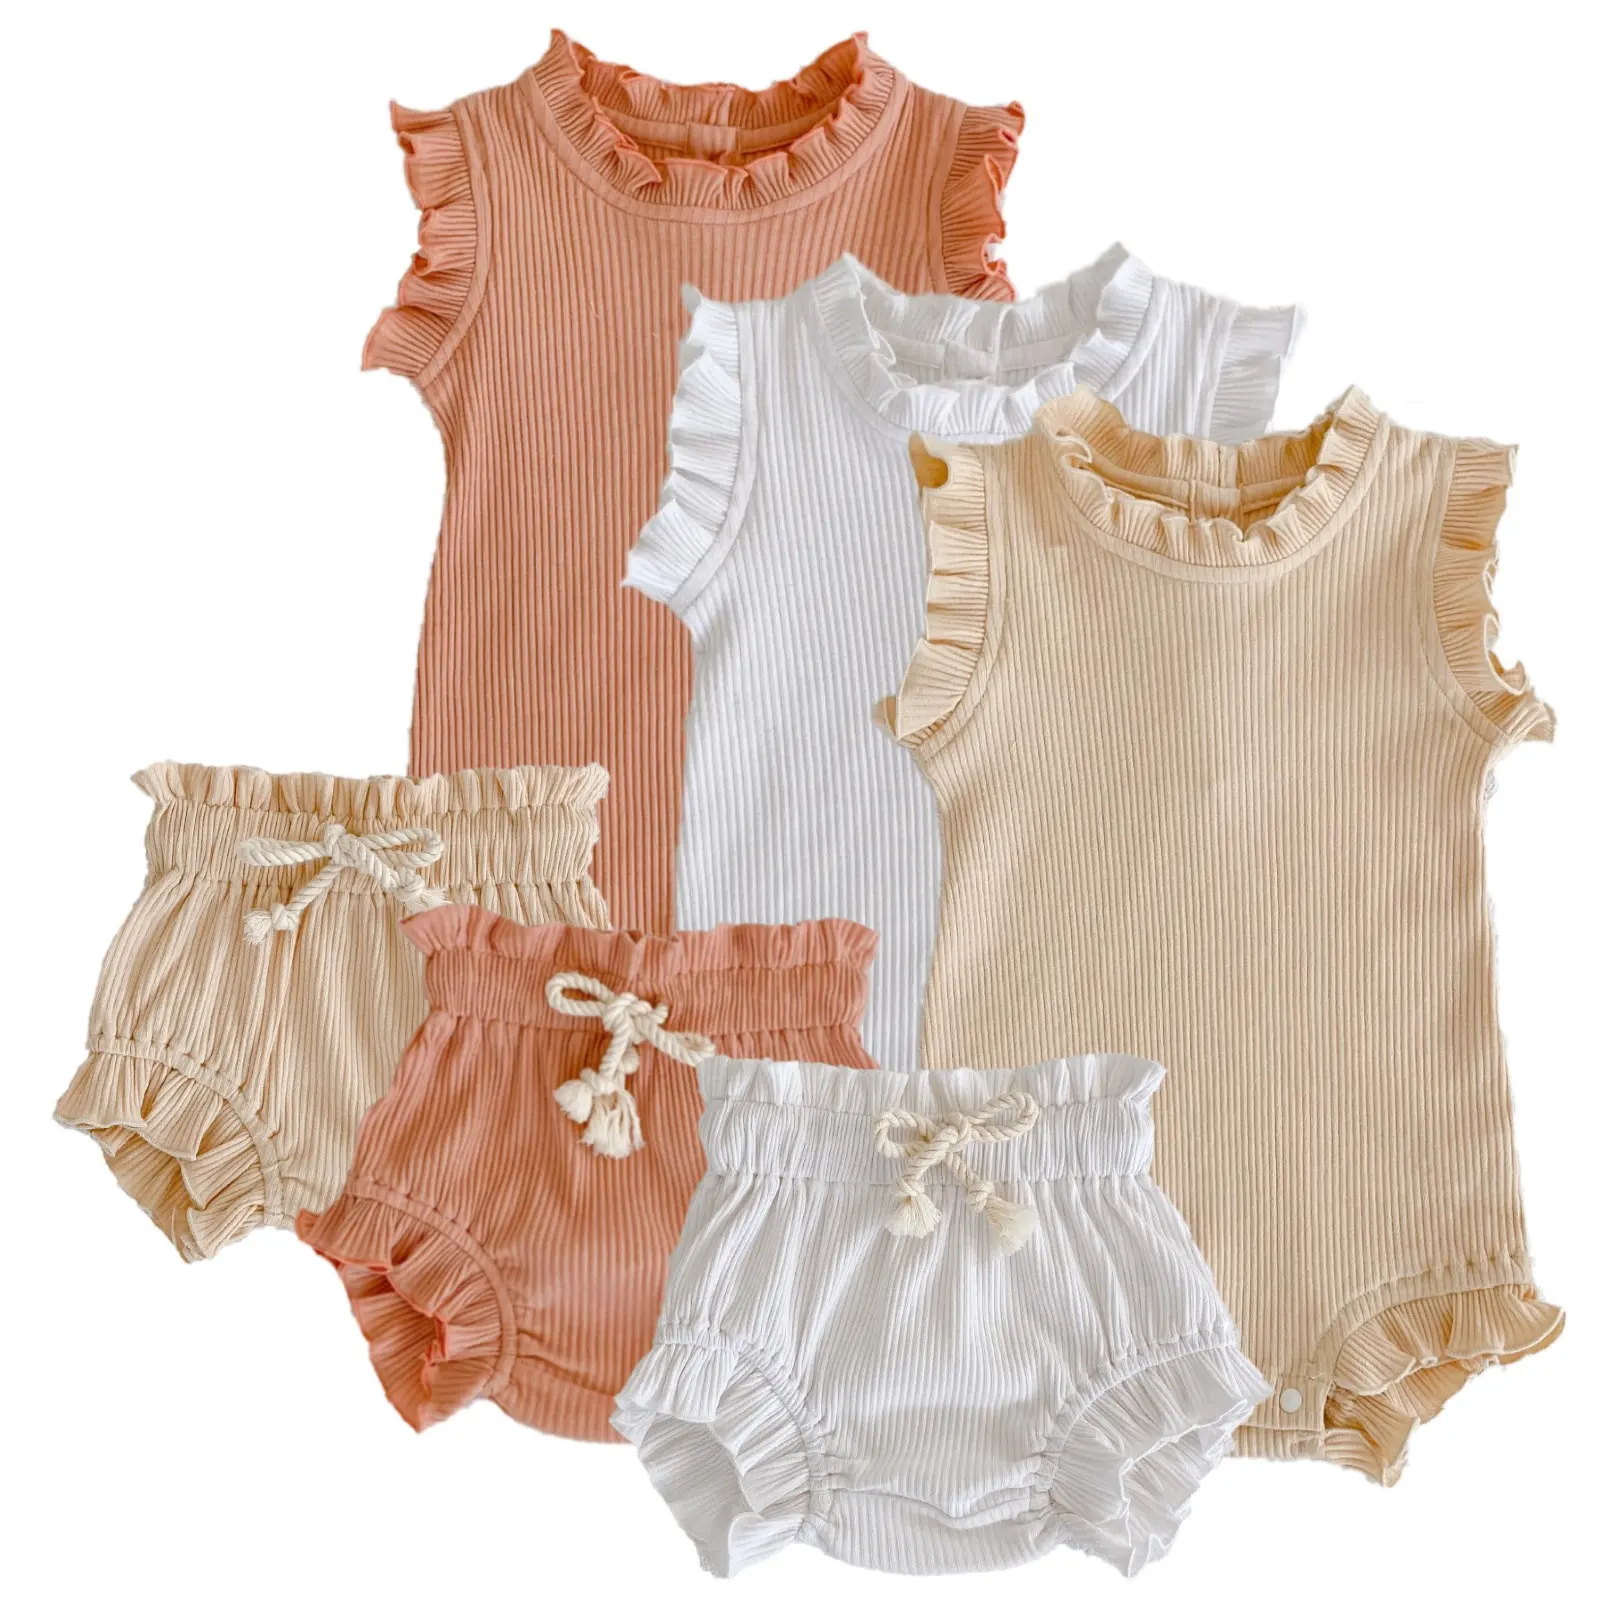 Rts conjunto de roupas com blusa, conjunto de roupas de algodão para bebês recém-nascidos, com babado e cordão